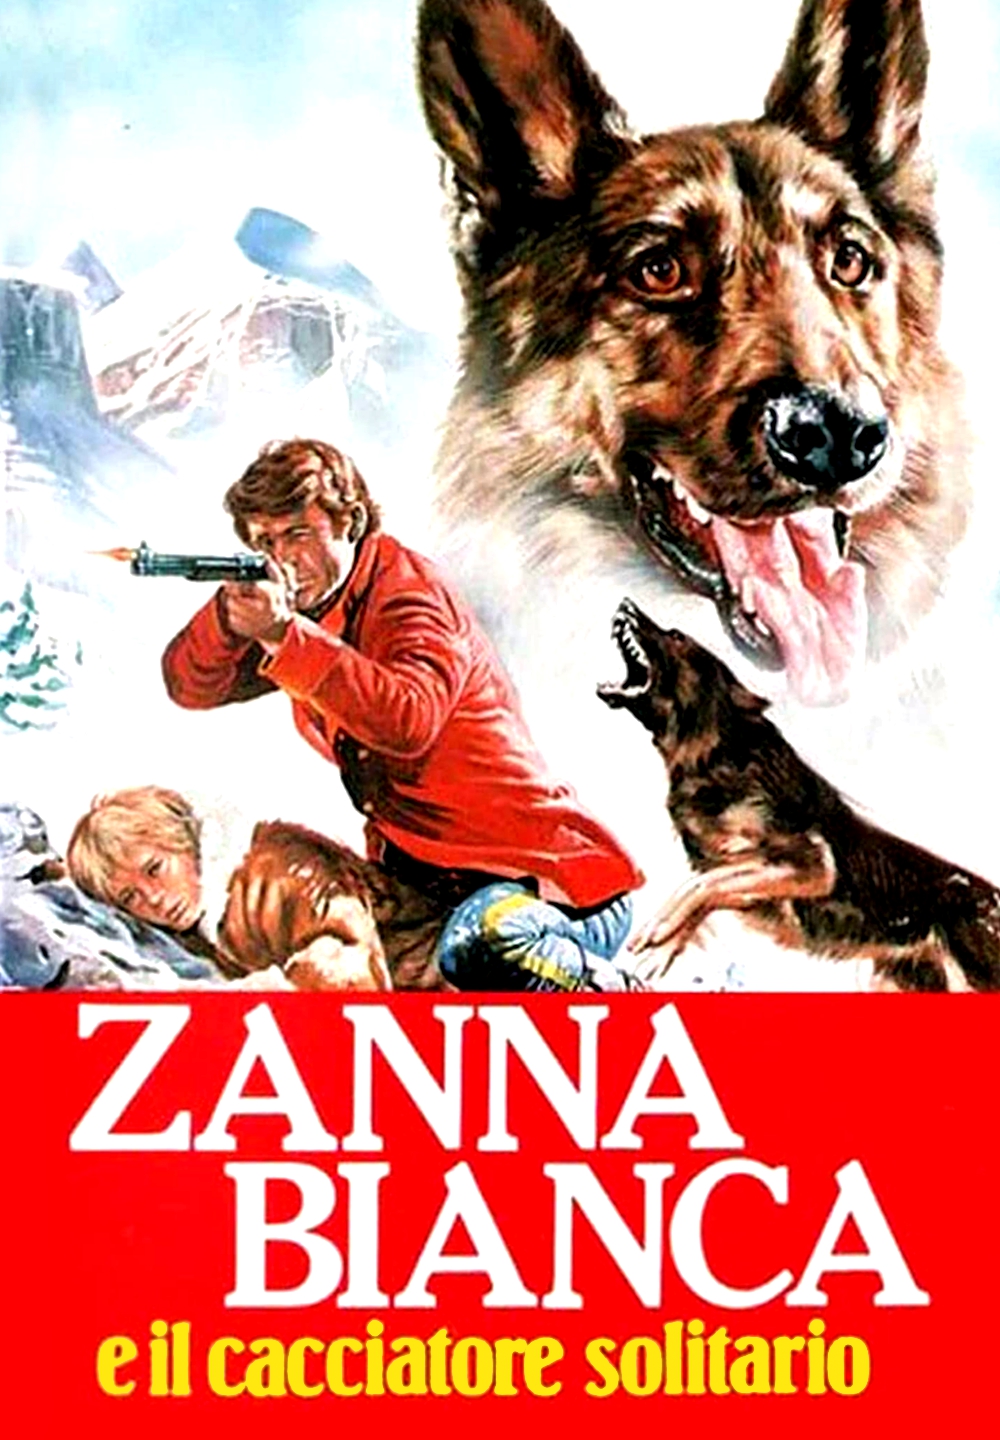 Zanna Bianca e il cacciatore solitario (1976)